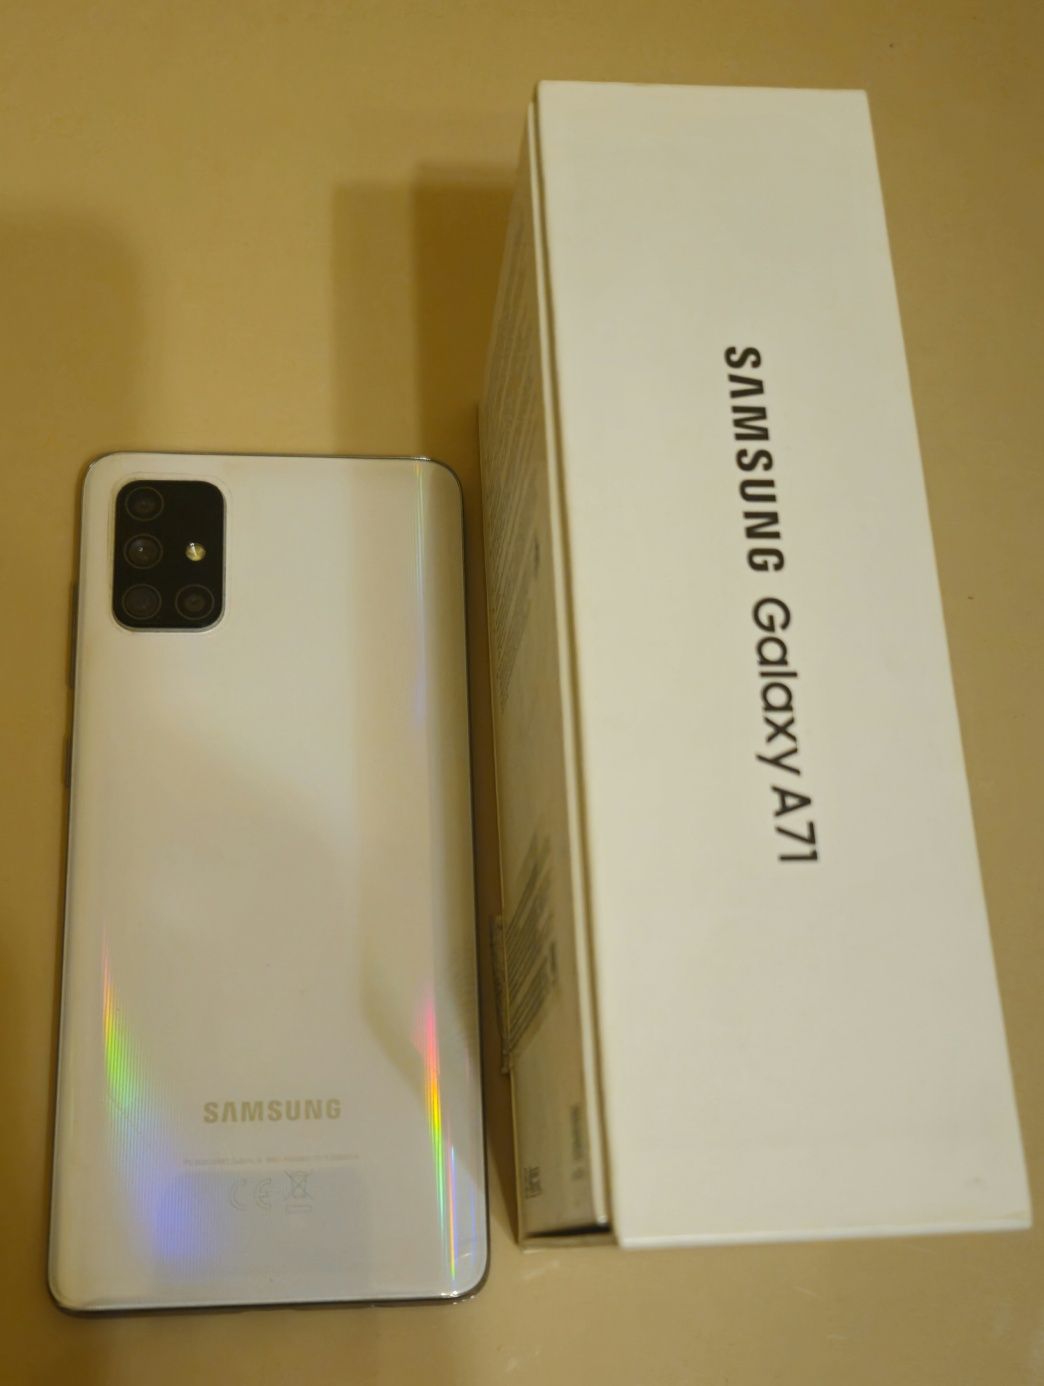 Telefon mobil Samsung Galaxy A71, Dual SIM, 128GB, 6GB RAM, 4G, Silver